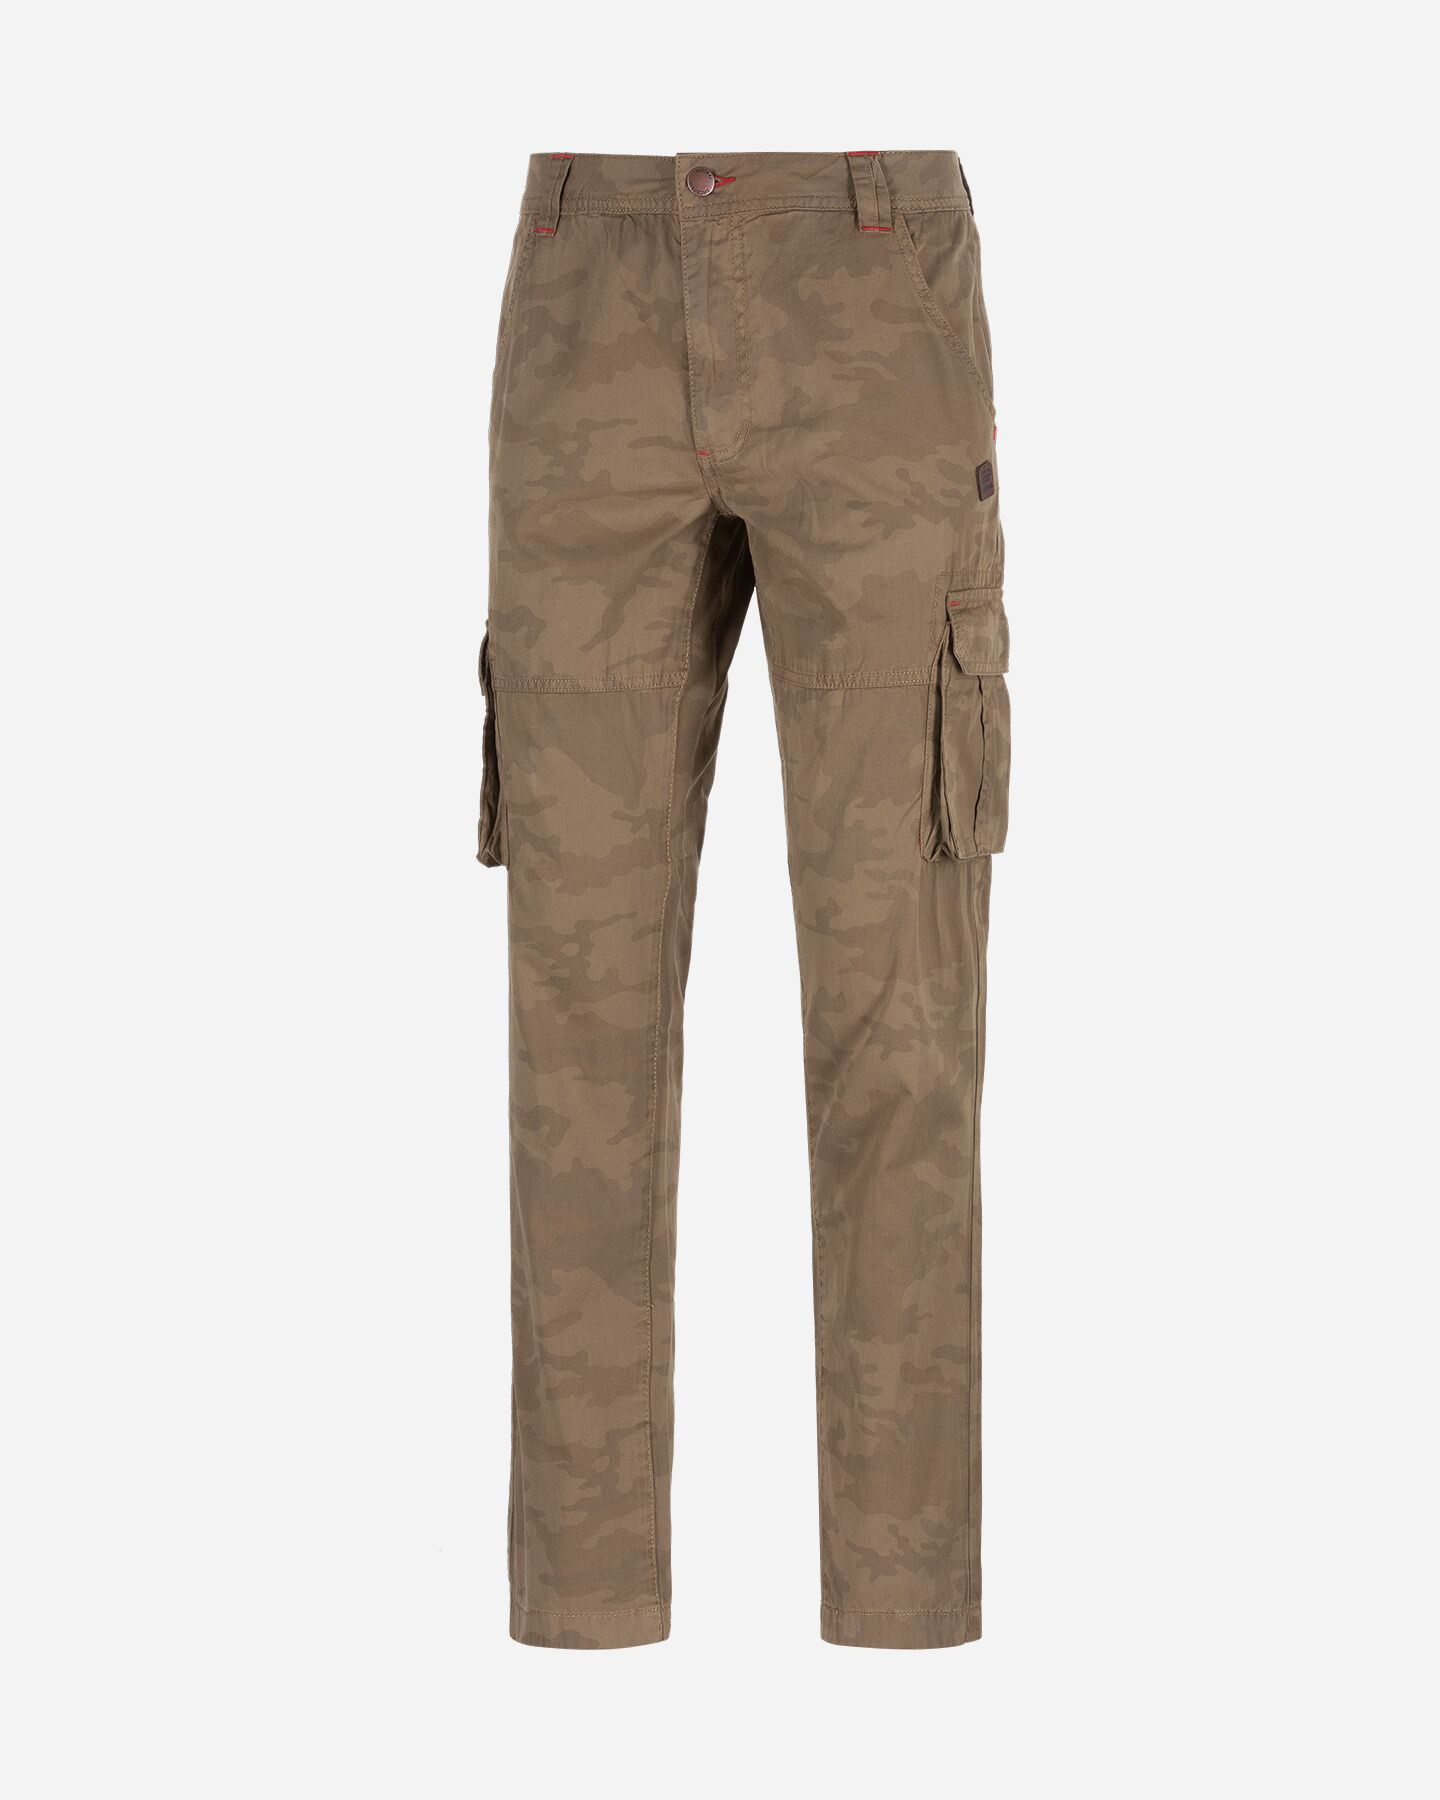  Pantalone MISTRAL CARGO M S4074987|896|42 scatto 0